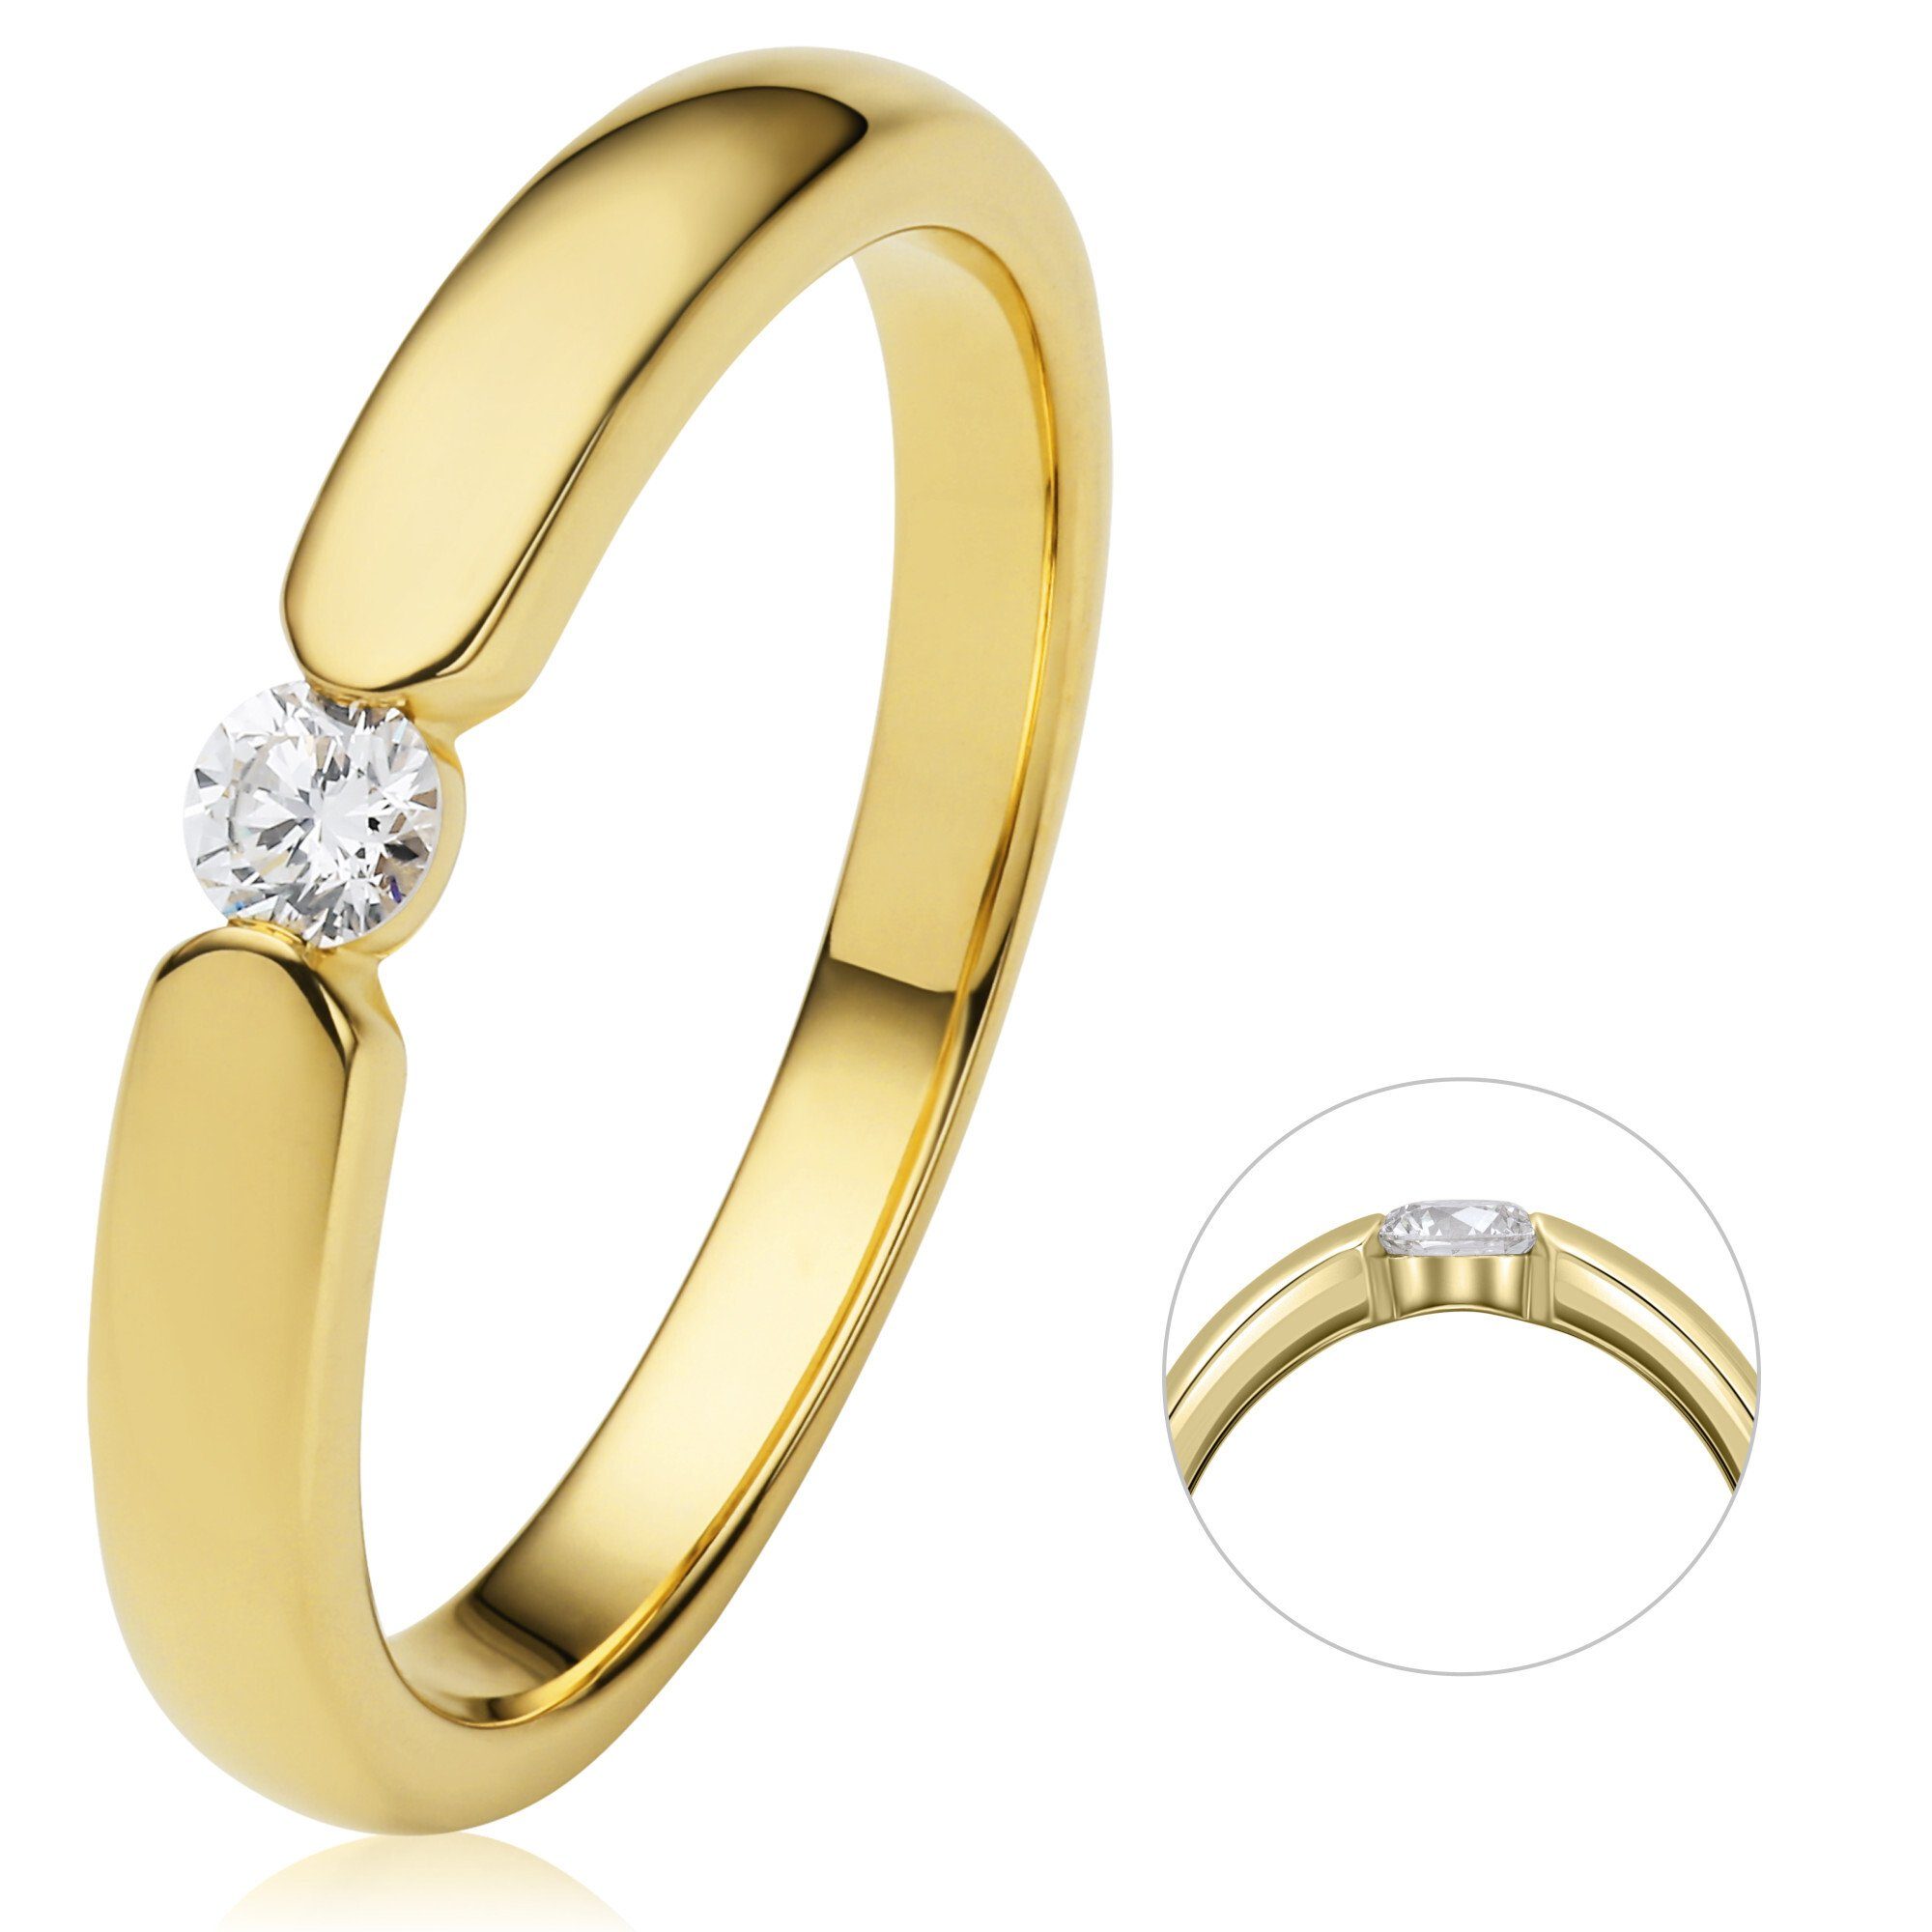 ONE ELEMENT Diamantring 0.13 ct Diamant Brillant Spannfassung Ring aus 750 Gelbgold, Damen Gold Schmuck Spannfassung